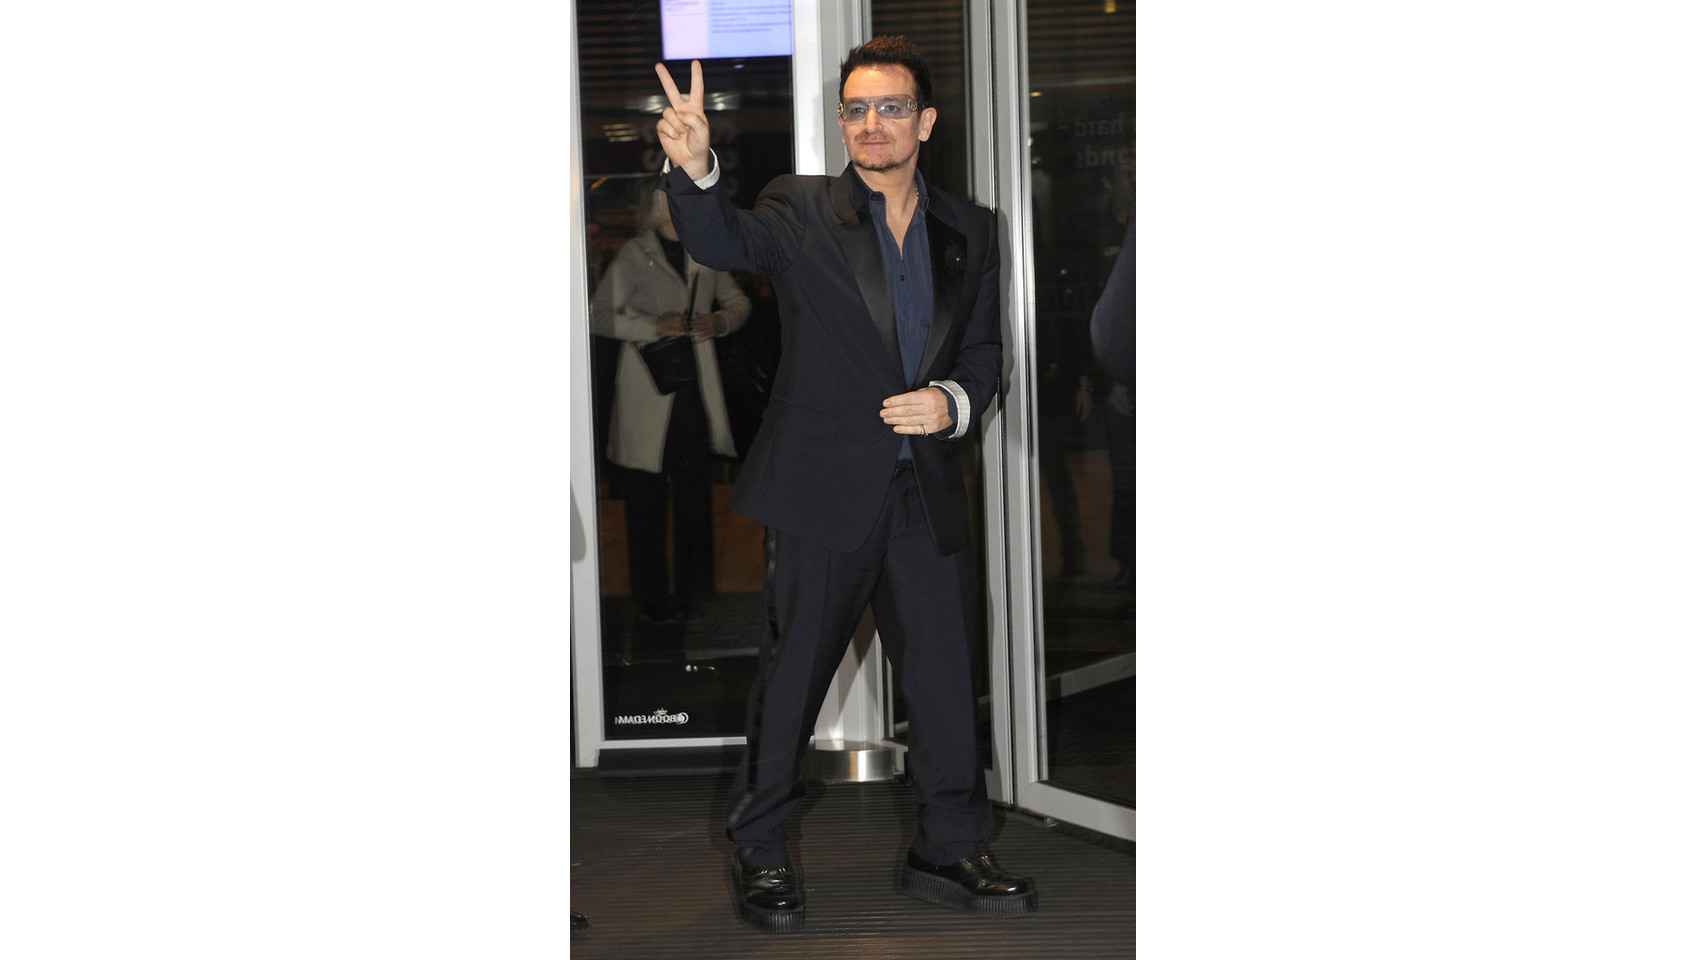 Amantes de las botas vaqueras, Bono y su grupo U2 lanzaron un single titulado Sexy Boots.